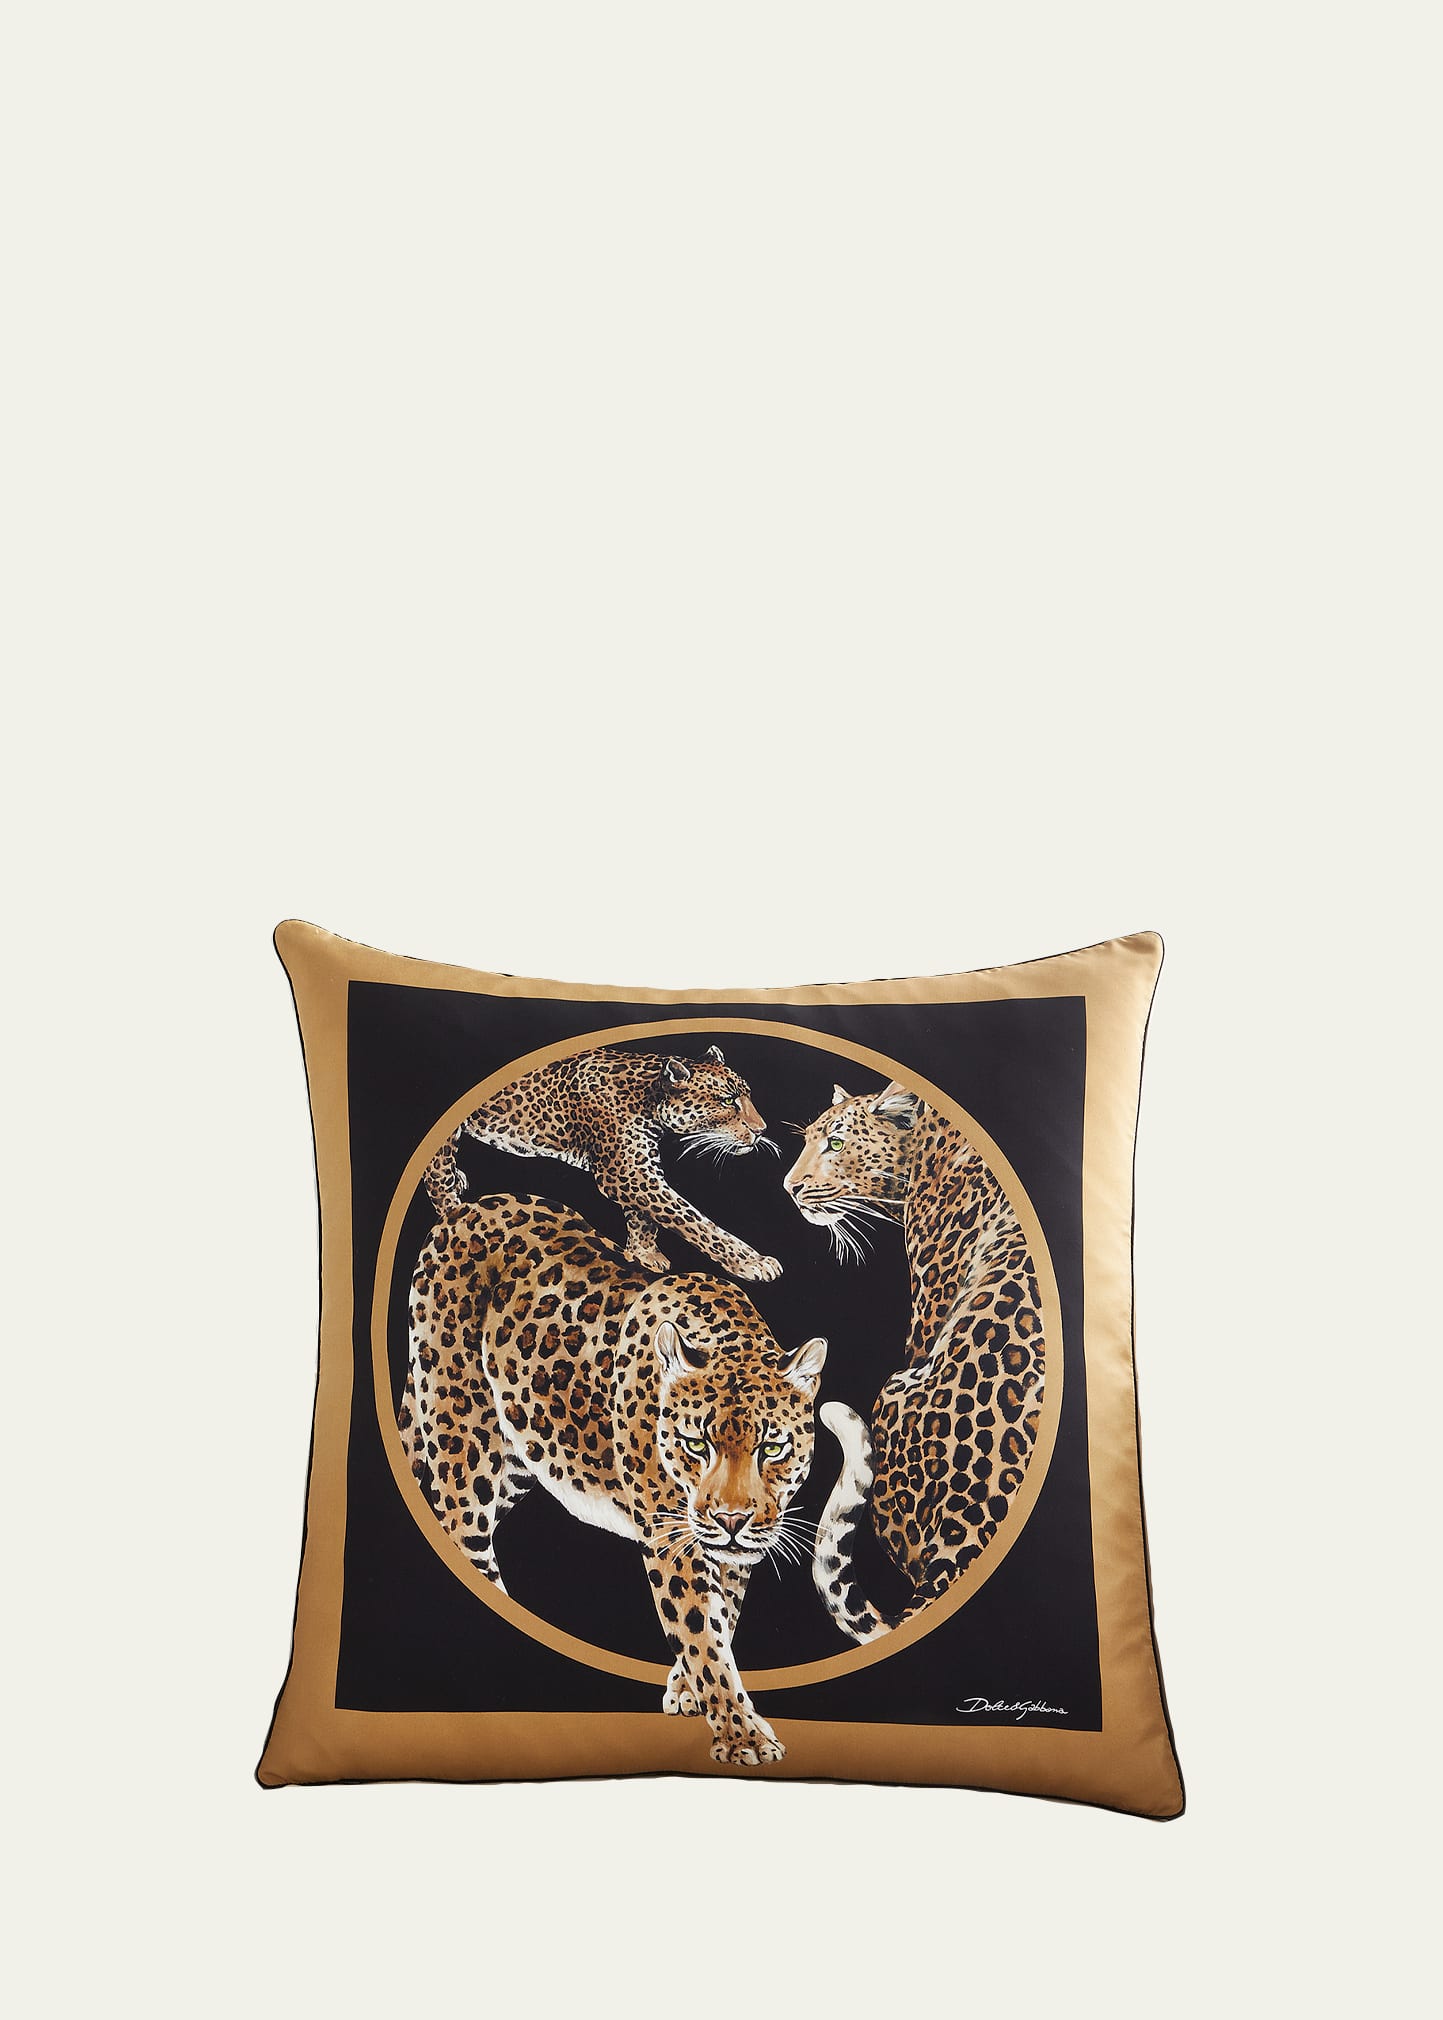 Leopard Silk Cushion, 24"